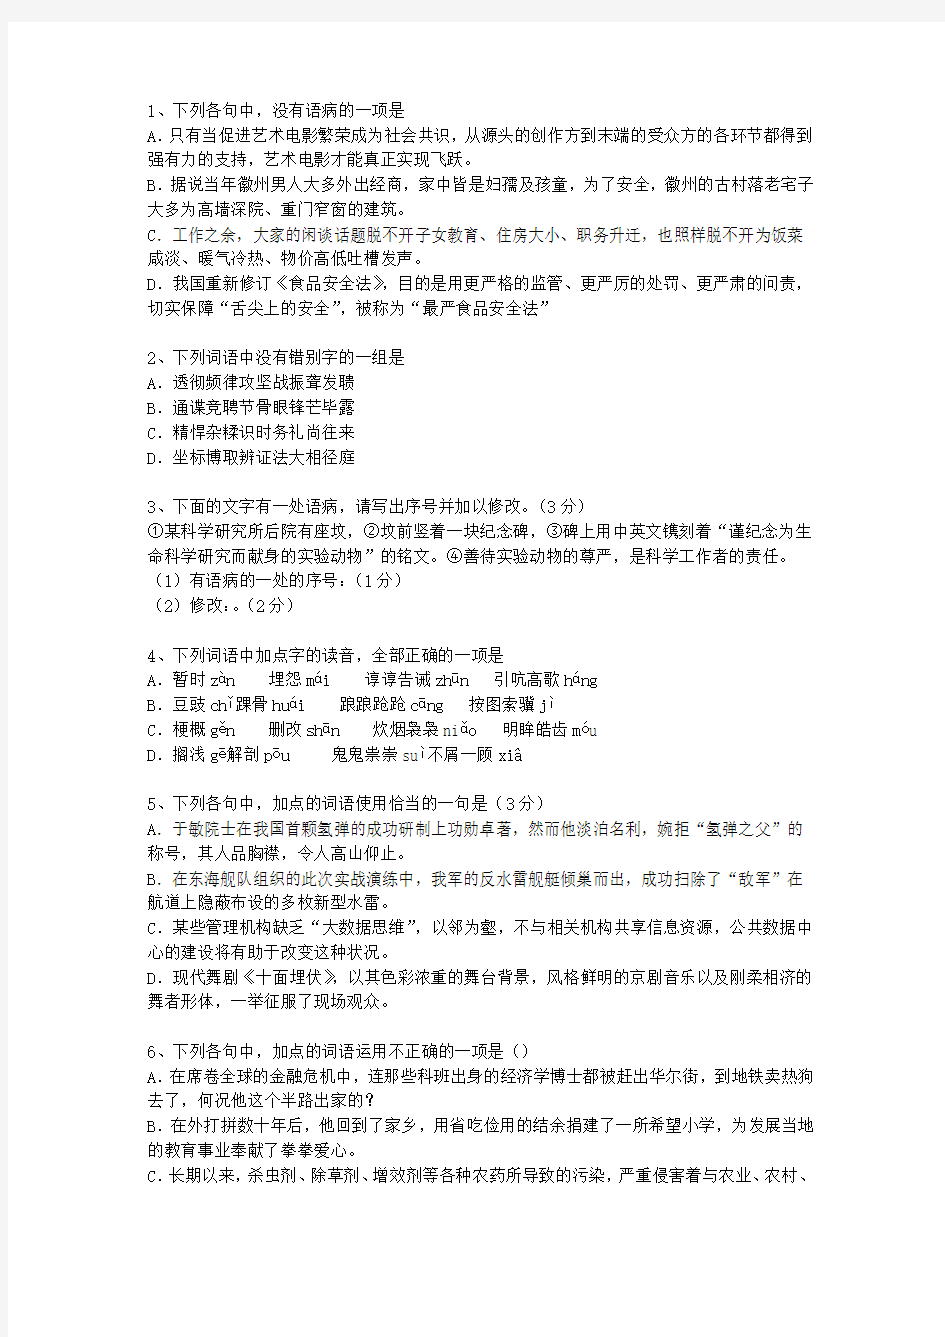 2013广东省高考语文试卷及参考答案考试重点和考试技巧